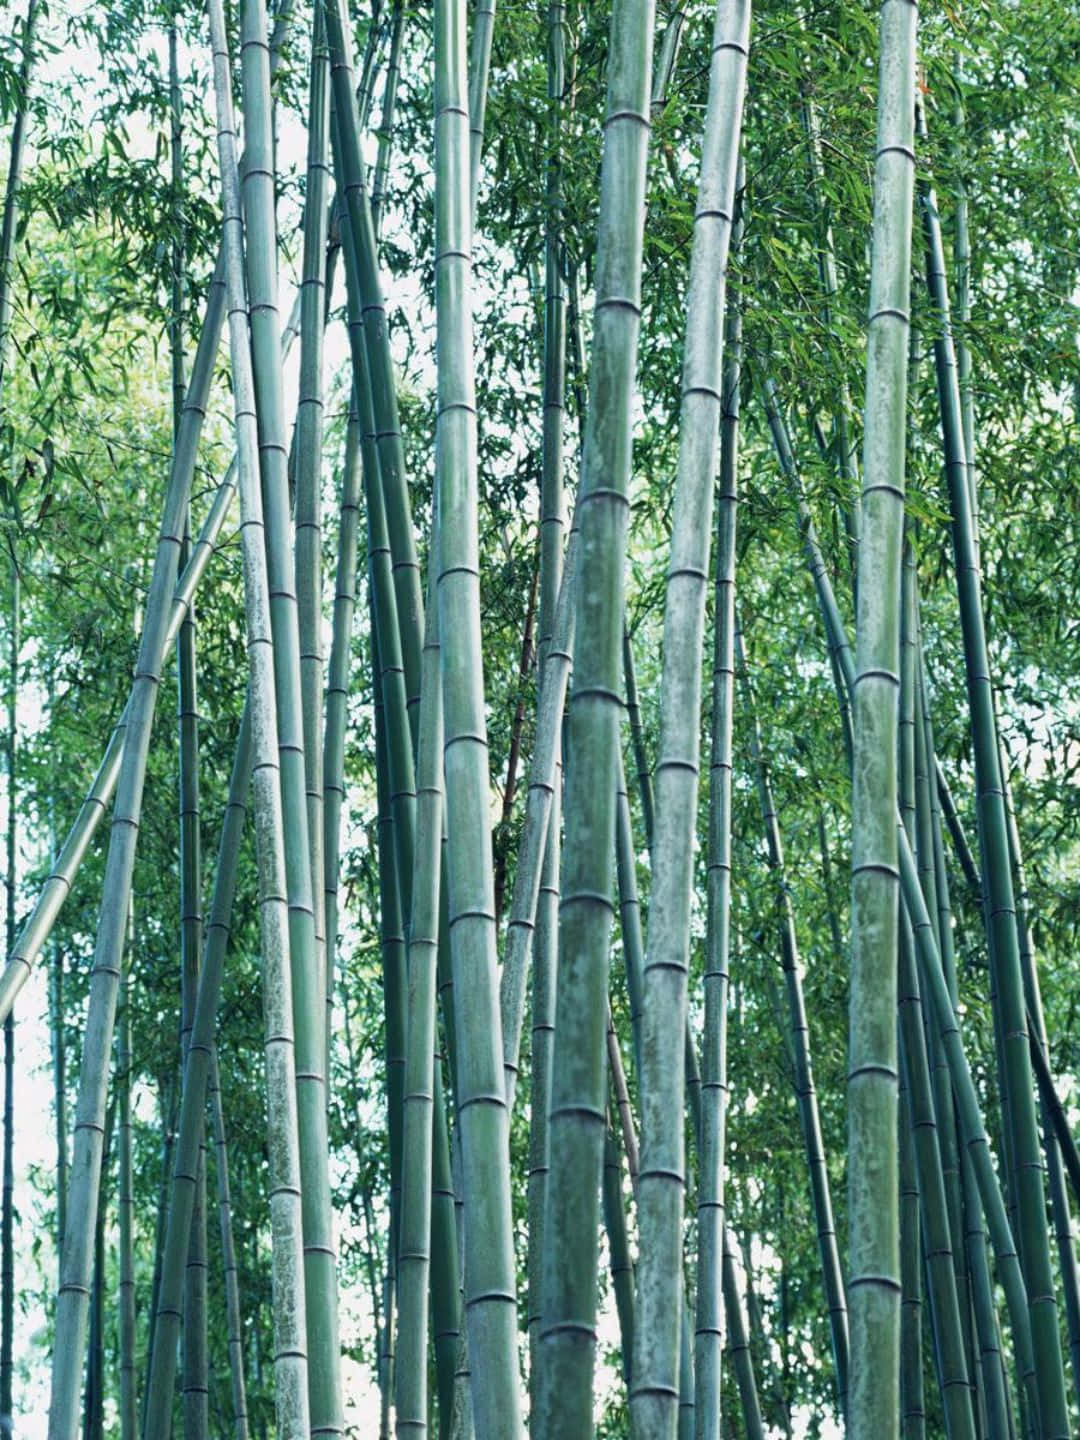 Fundode Tela De Bambu Em 1440p Com Árvores De Bambu E Hastes Cinzas.